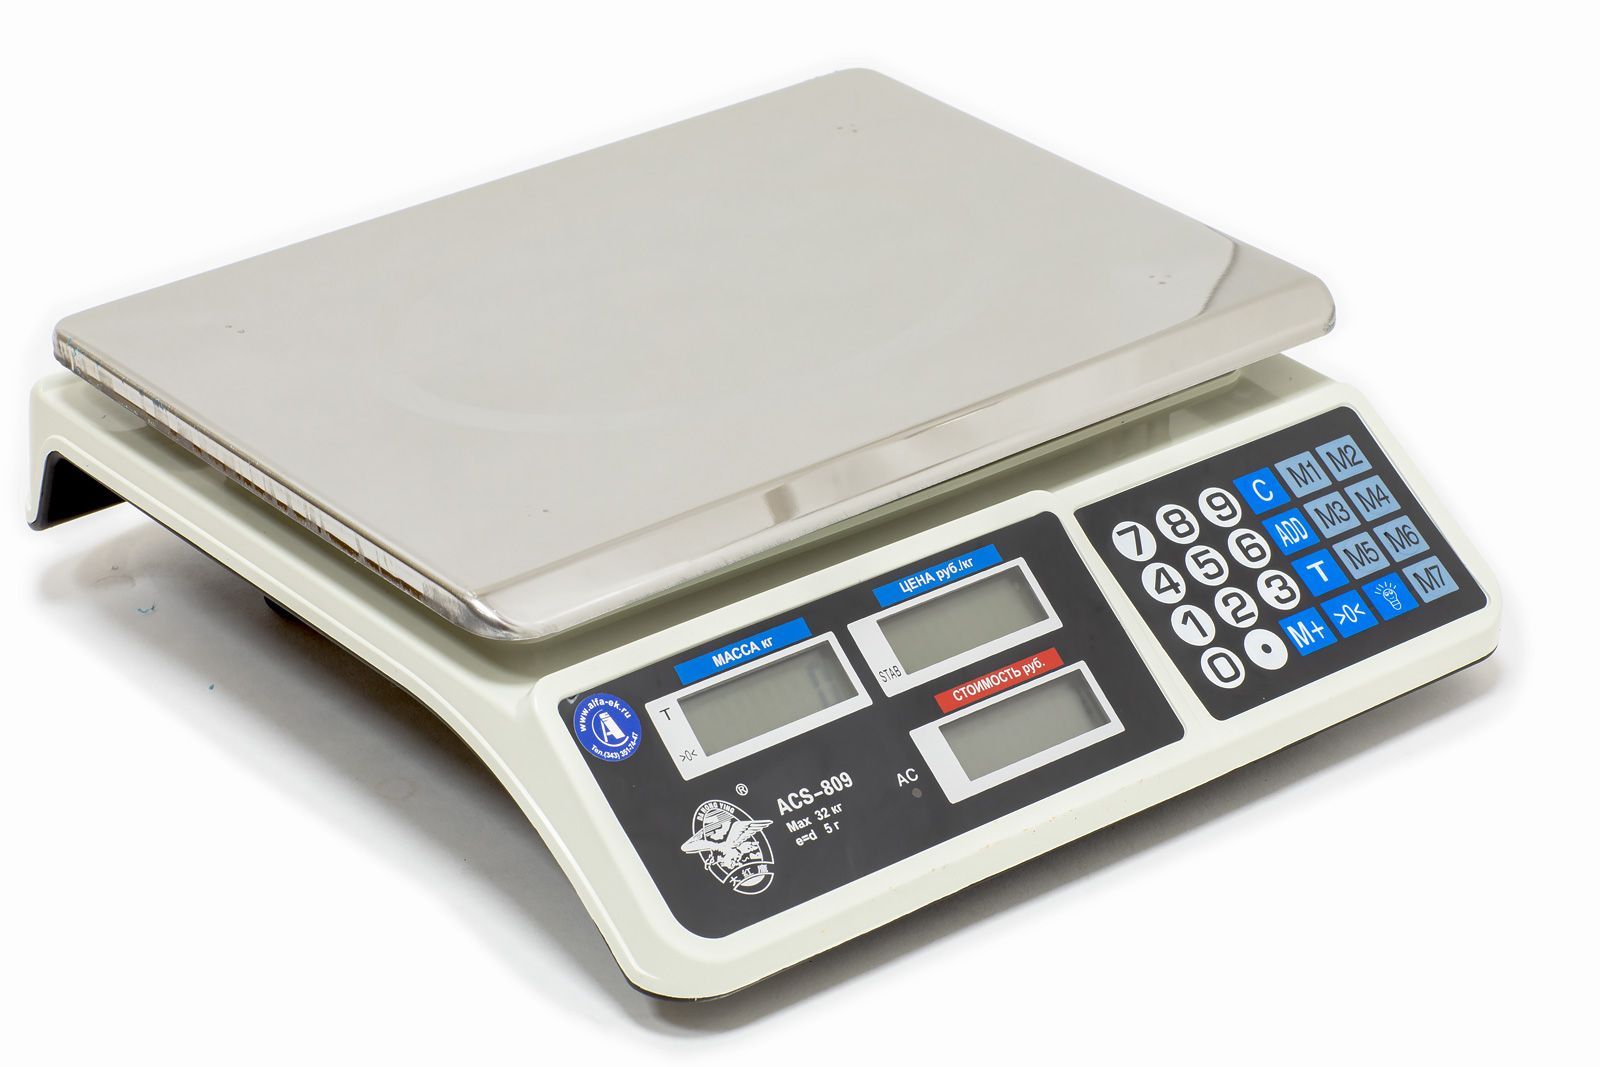 Весы бытовые ACS-809 профит (30кг/5г) LCD. Весы электронные торговые и acs890. Весы электронные 30кг/10г Oliver. Весы торговые электронные ACS-758//778 D max6кг.